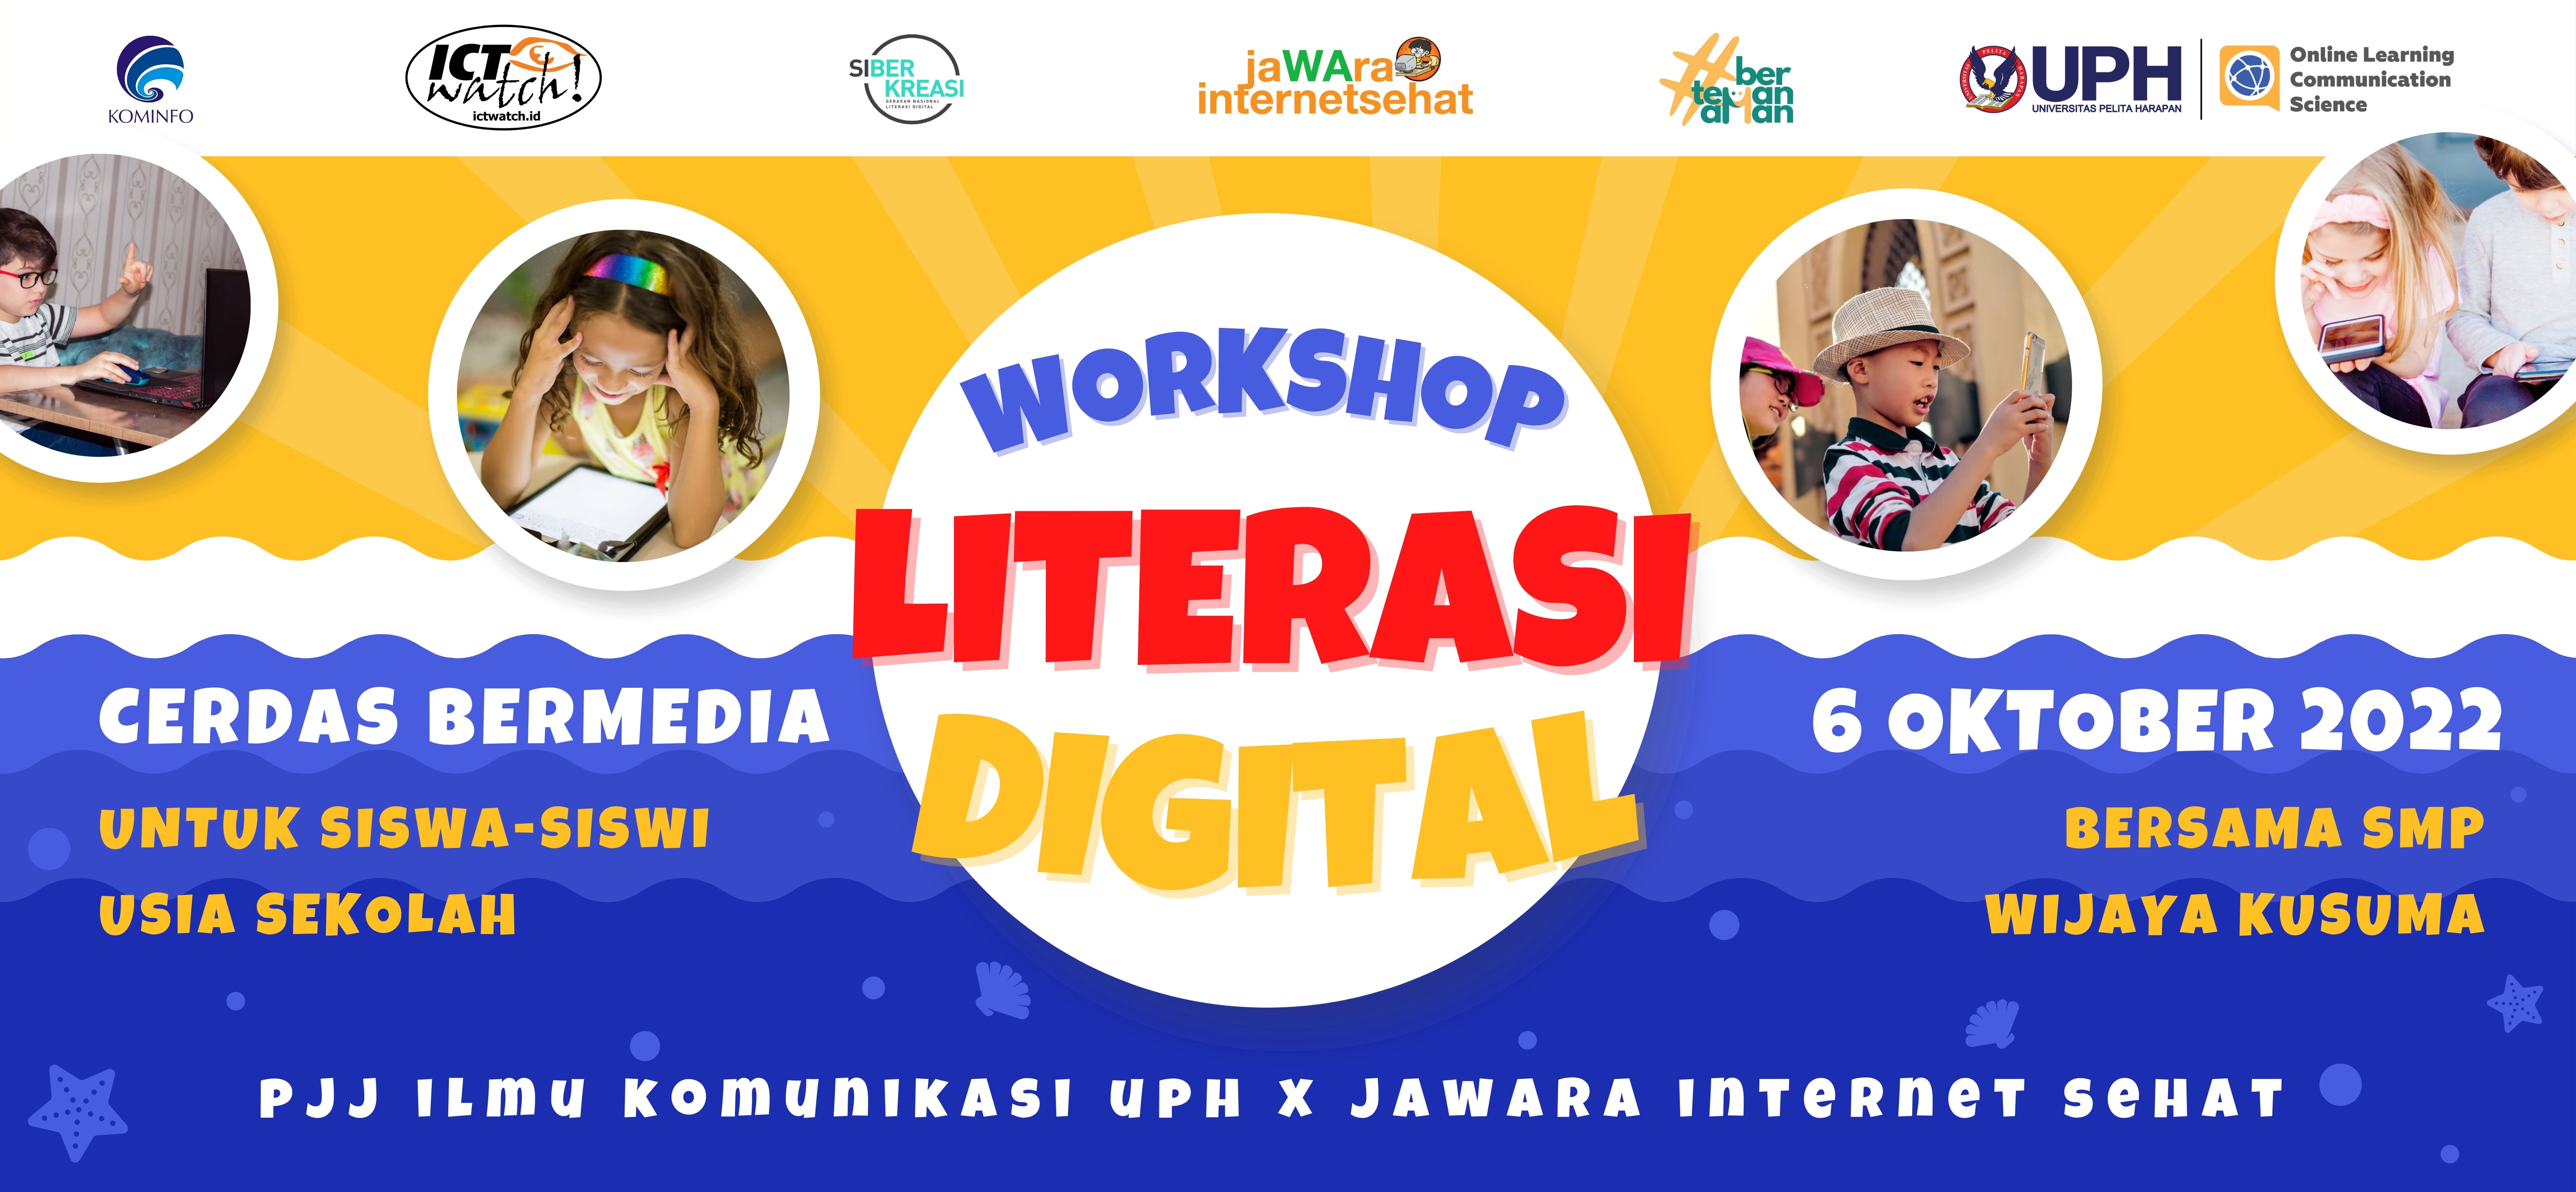 Workshop Literasi Digital: Tangkal Hoaks dan Cerdas Bermedia